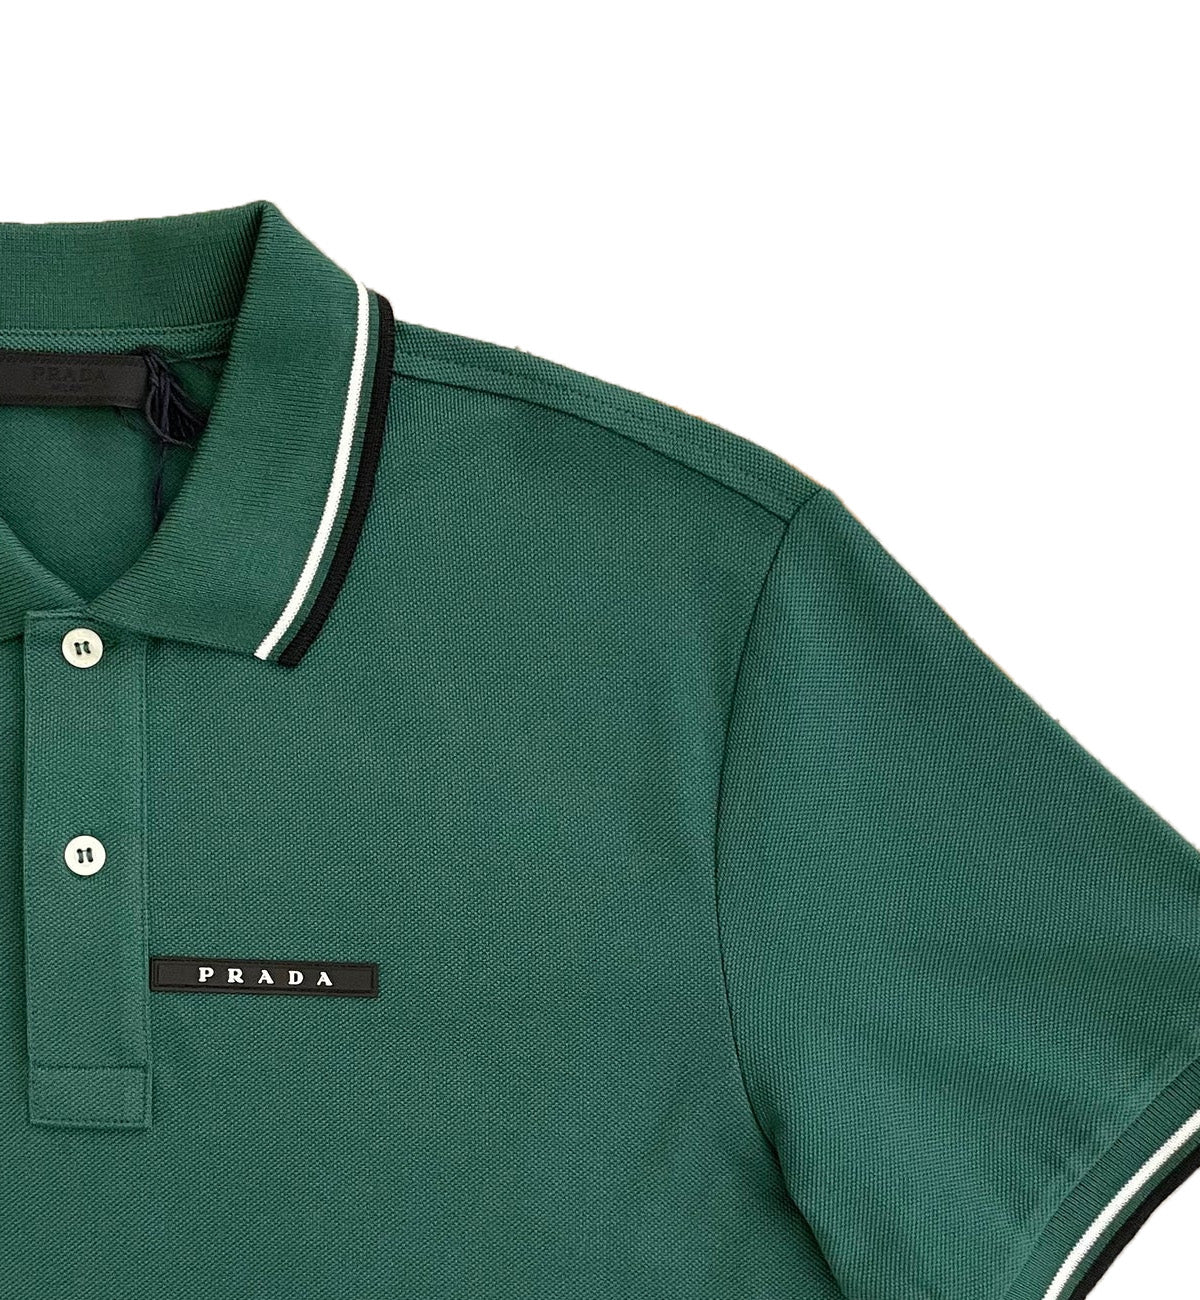 Prada Polo Shirt (Green)